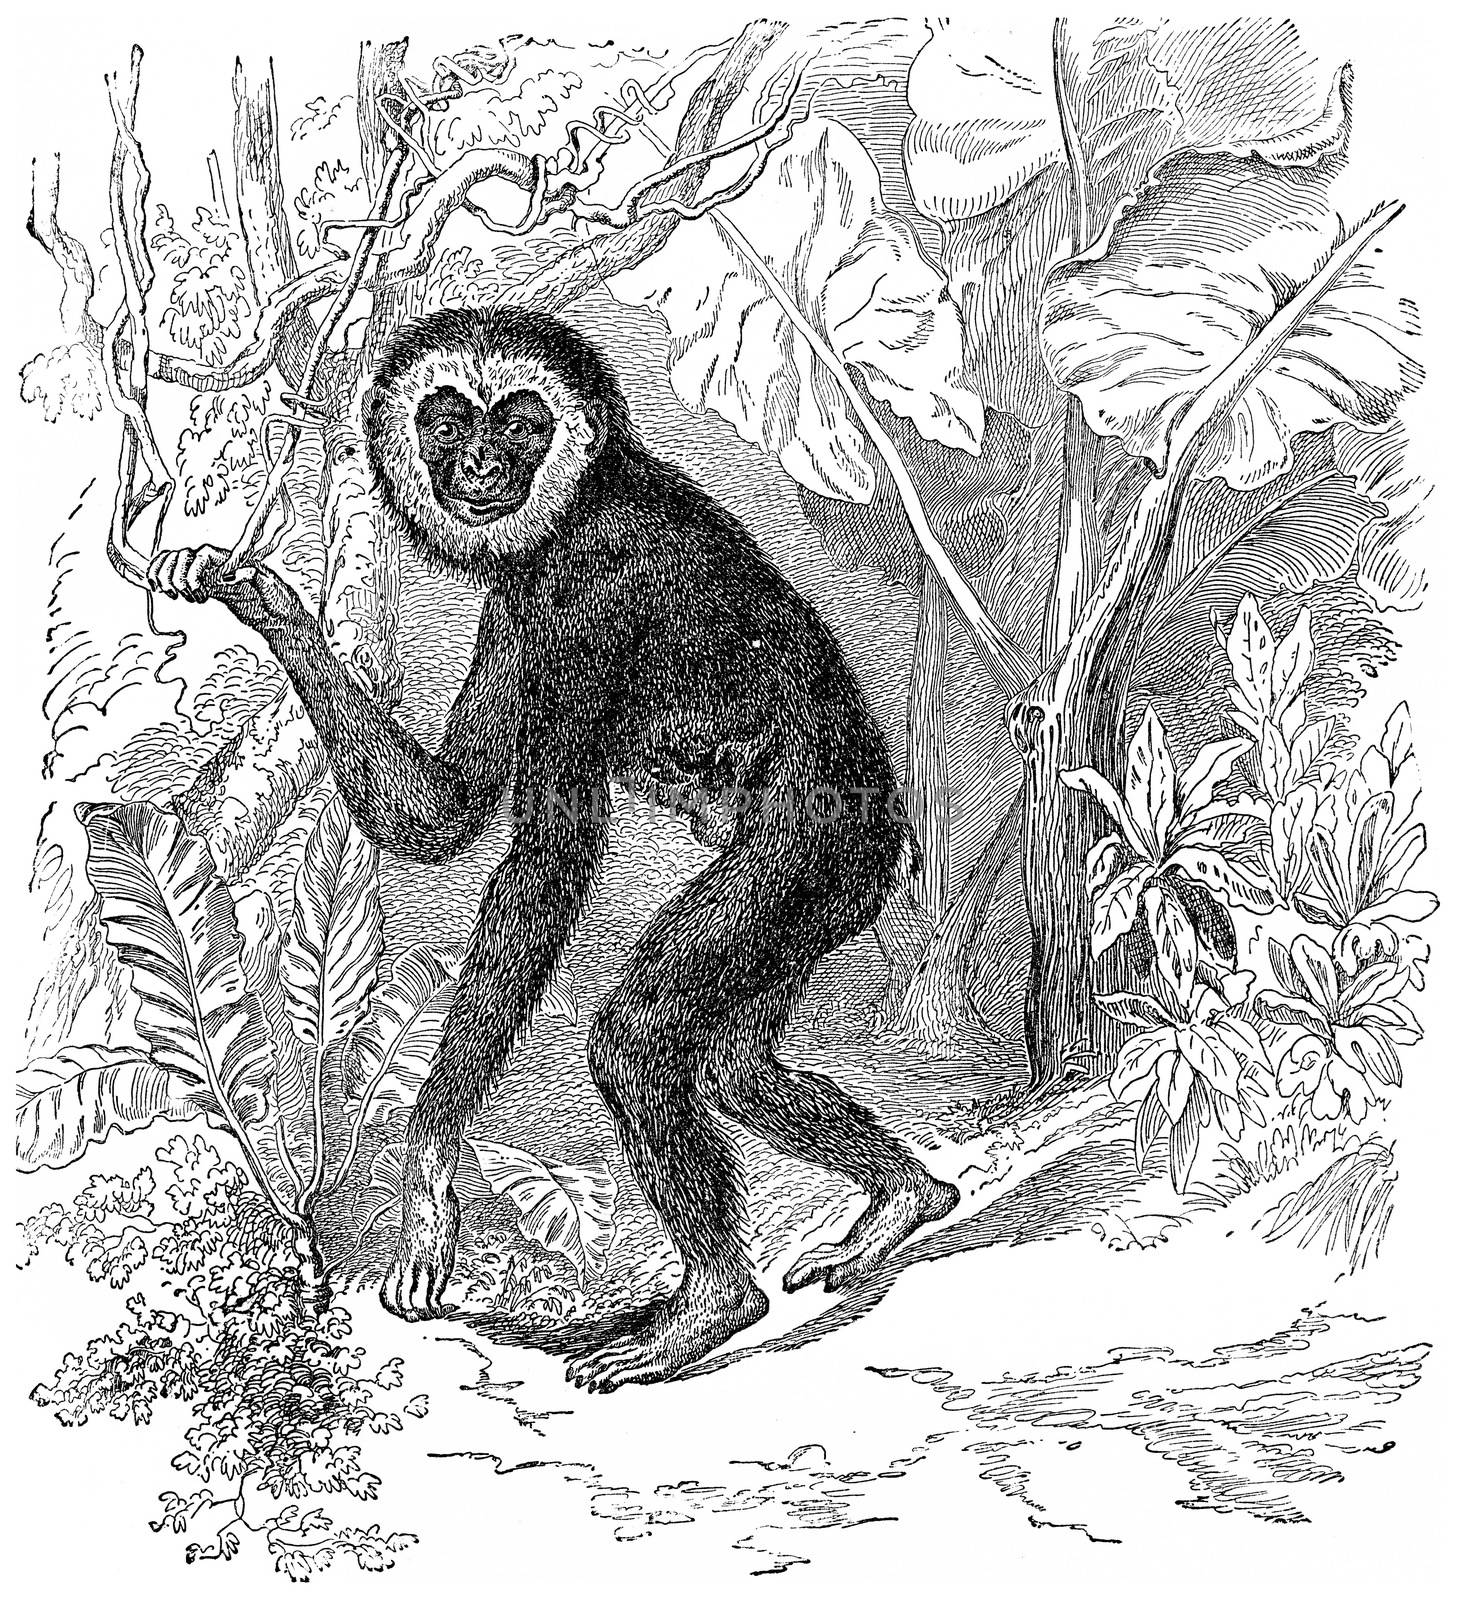 Gibbon, vintage engraved illustration. Earth before man – 1886.